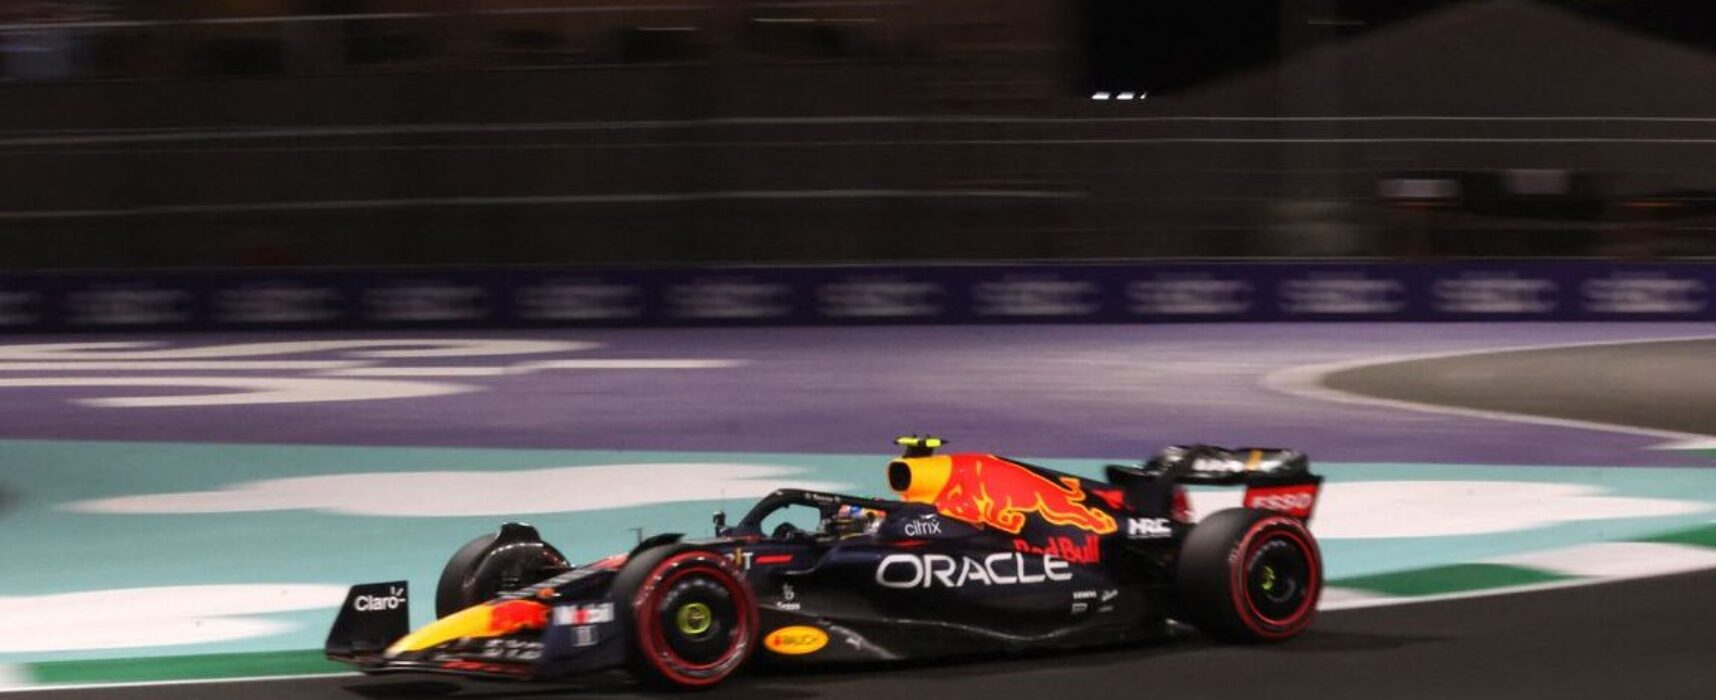 Perez garante primeira pole na F1 da carreira na Arábia Saudita